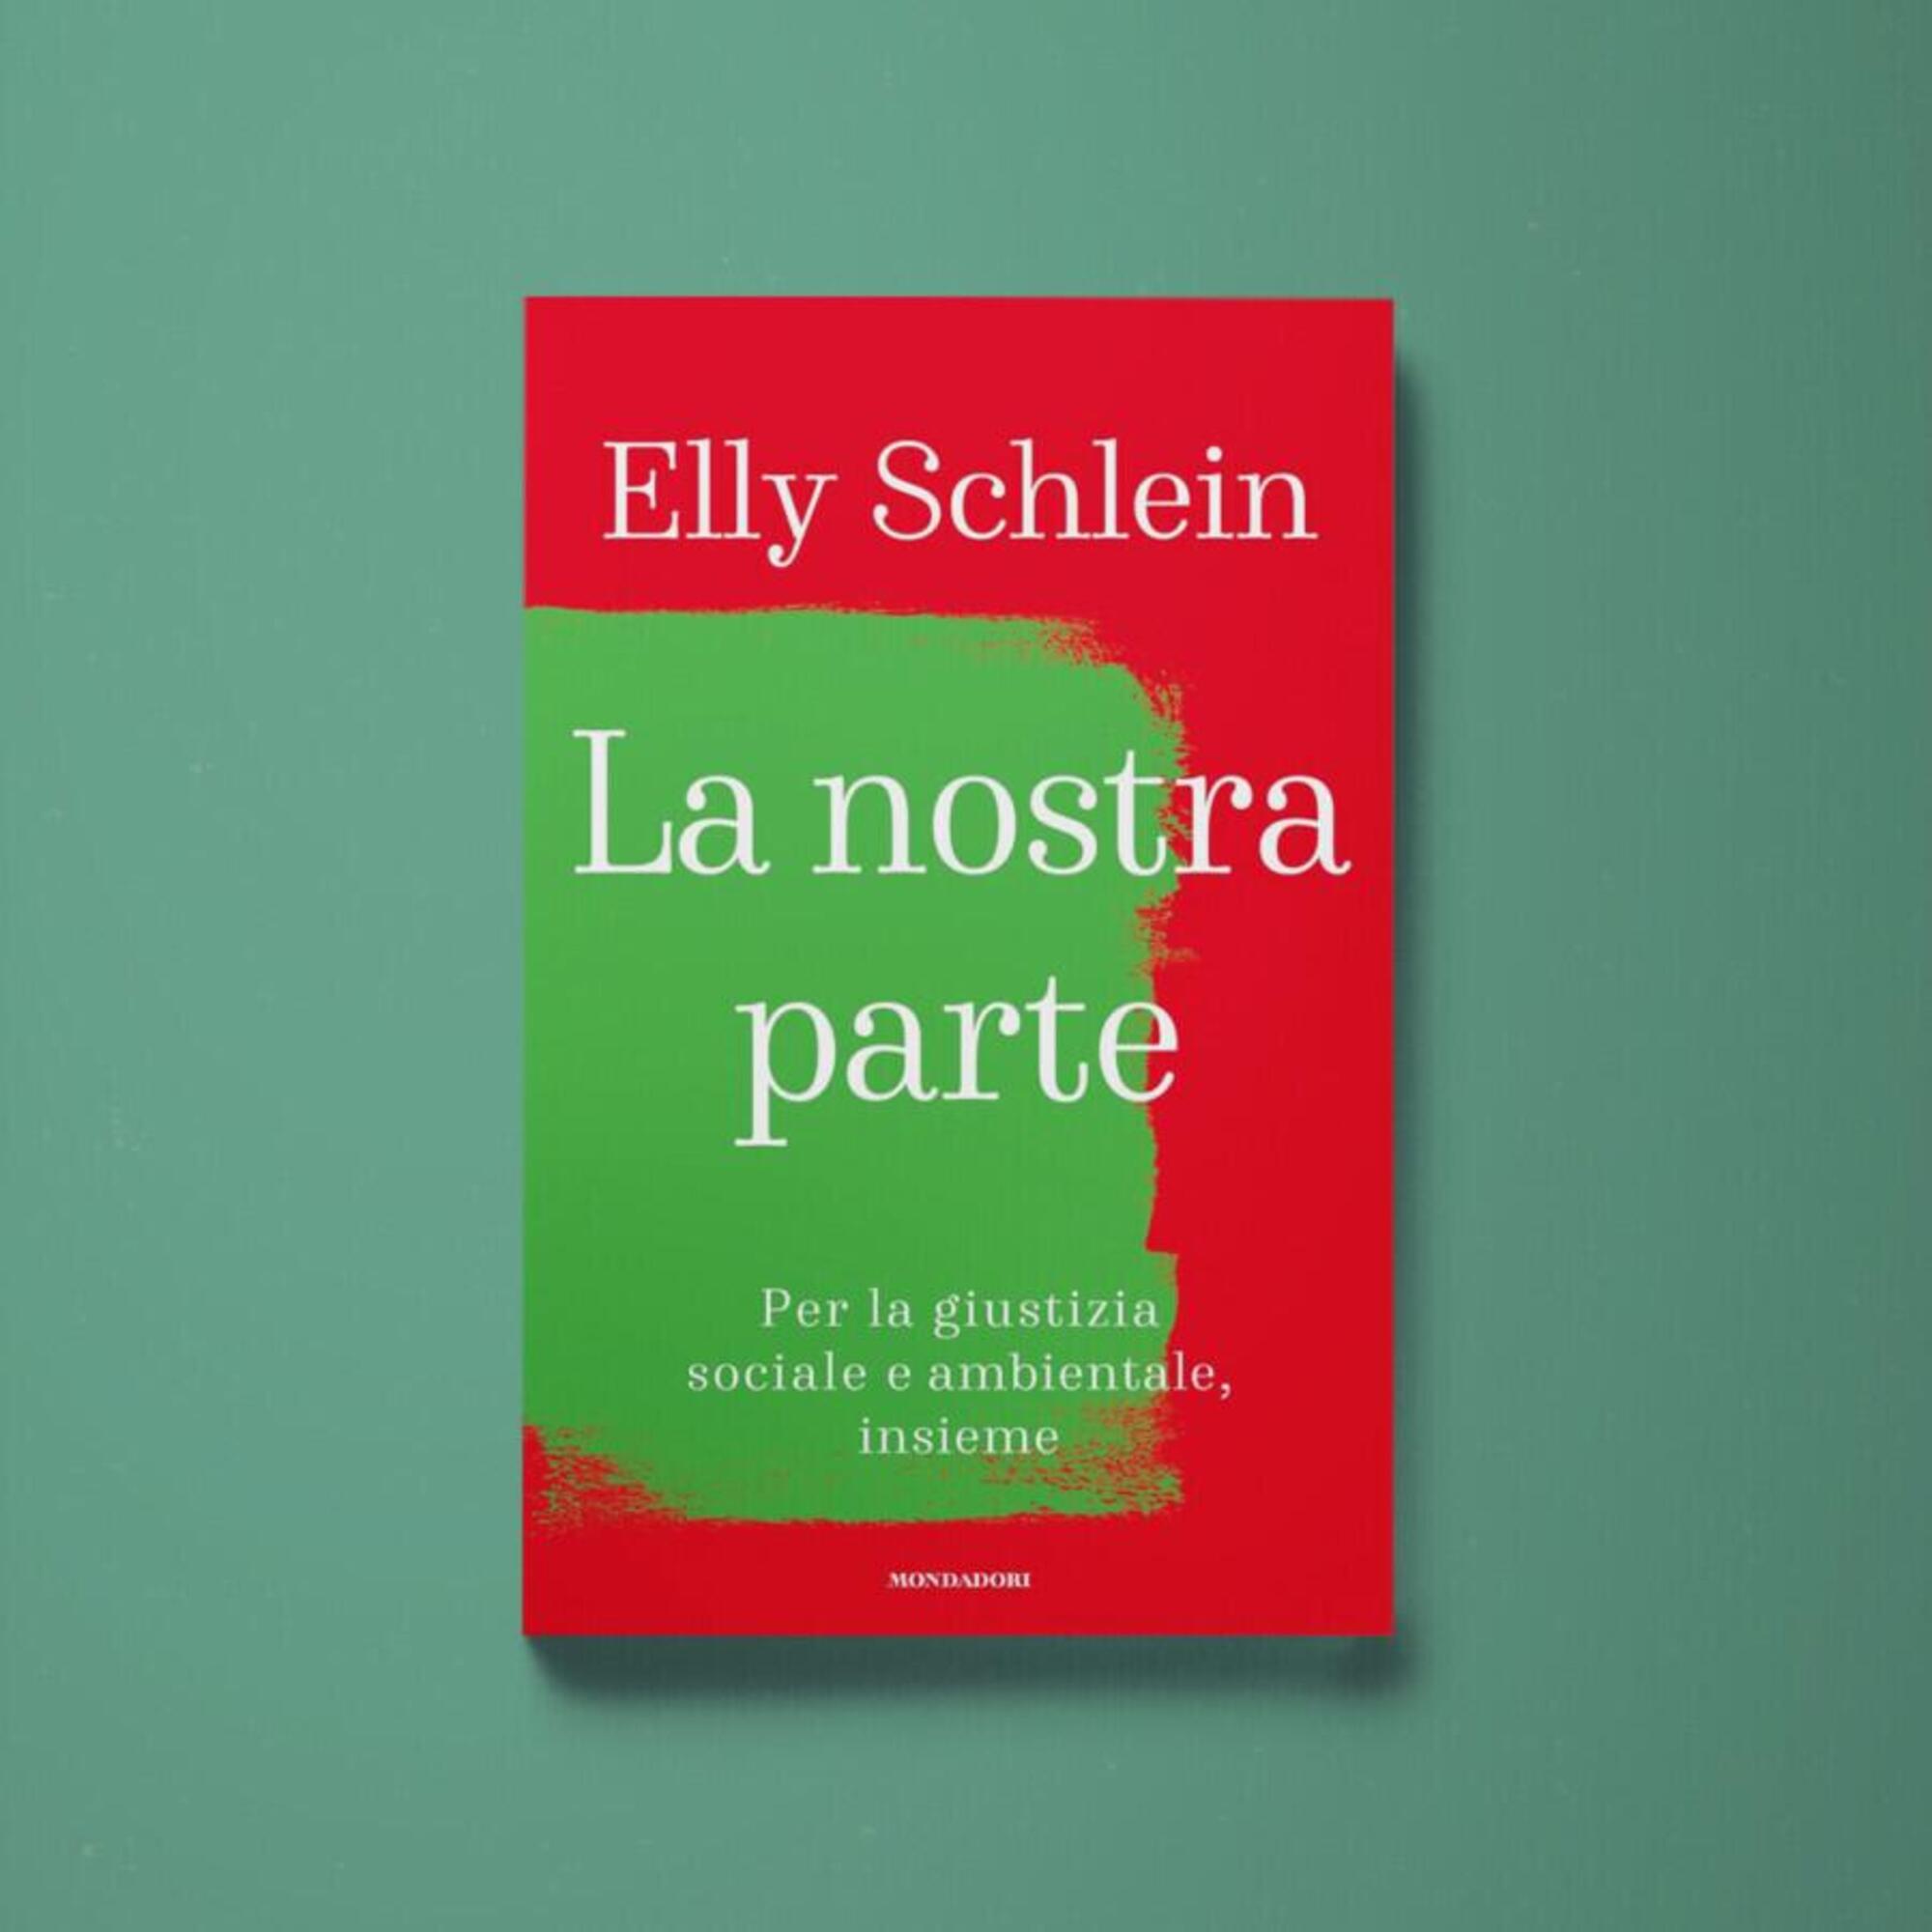 Il libro di Elly Schlein La nostra parte